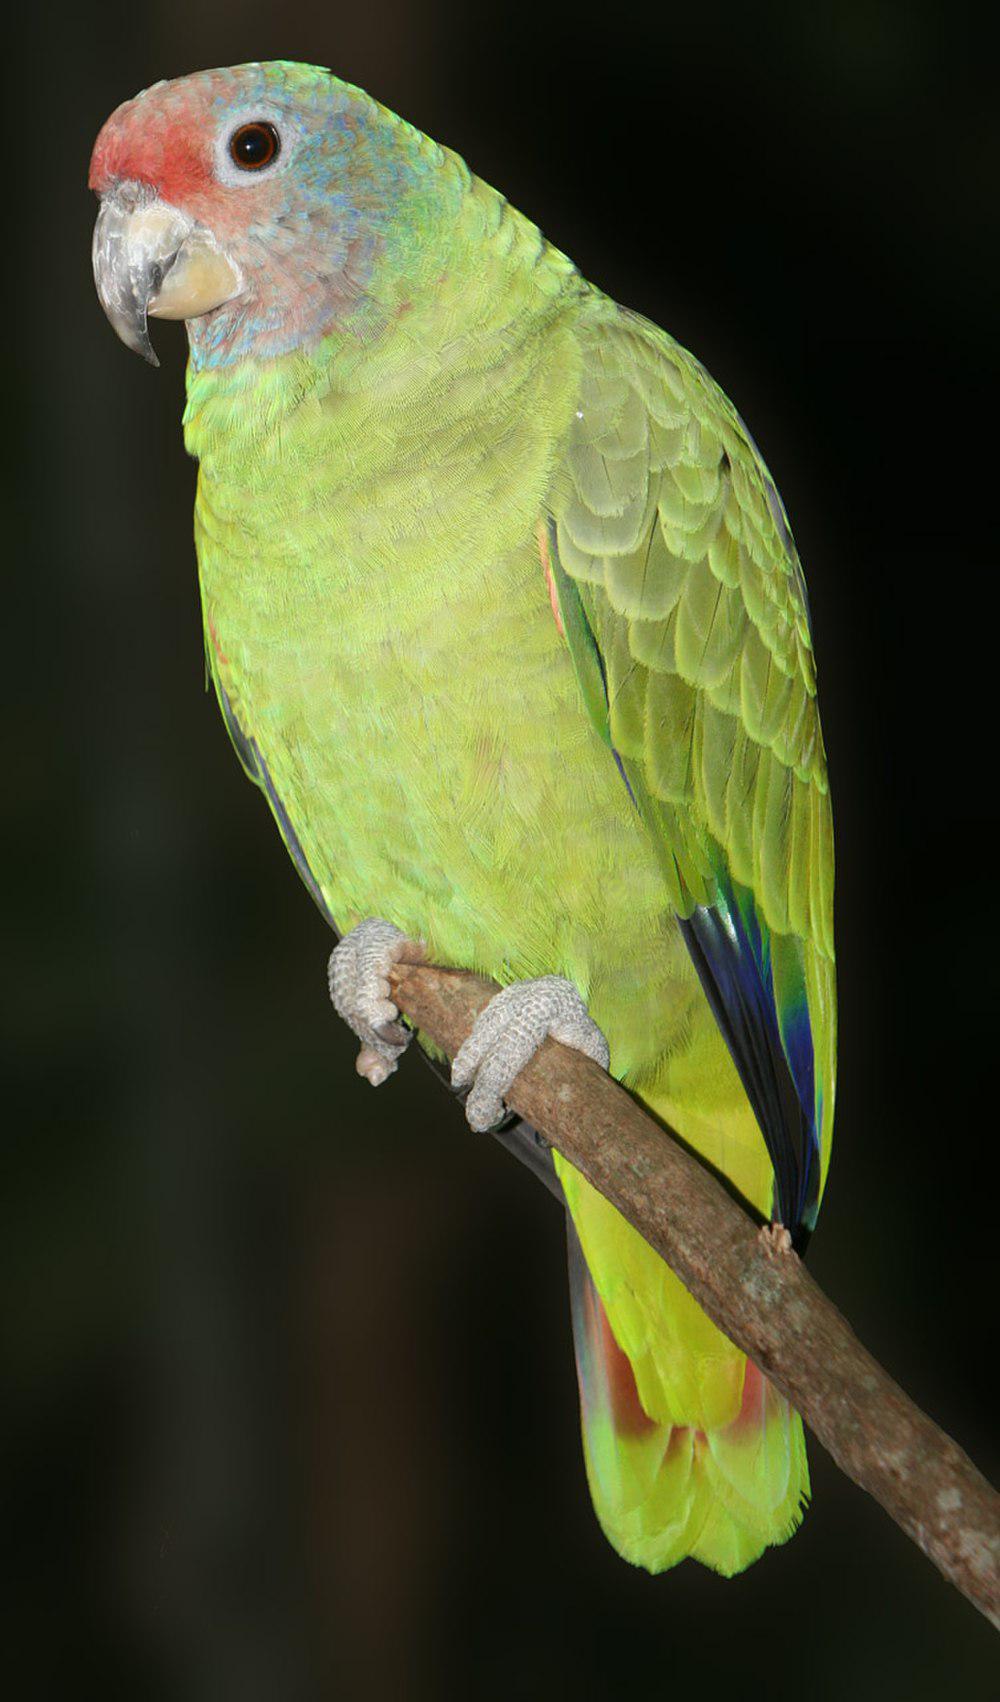 红尾鹦哥 / Red-tailed Amazon / Amazona brasiliensis